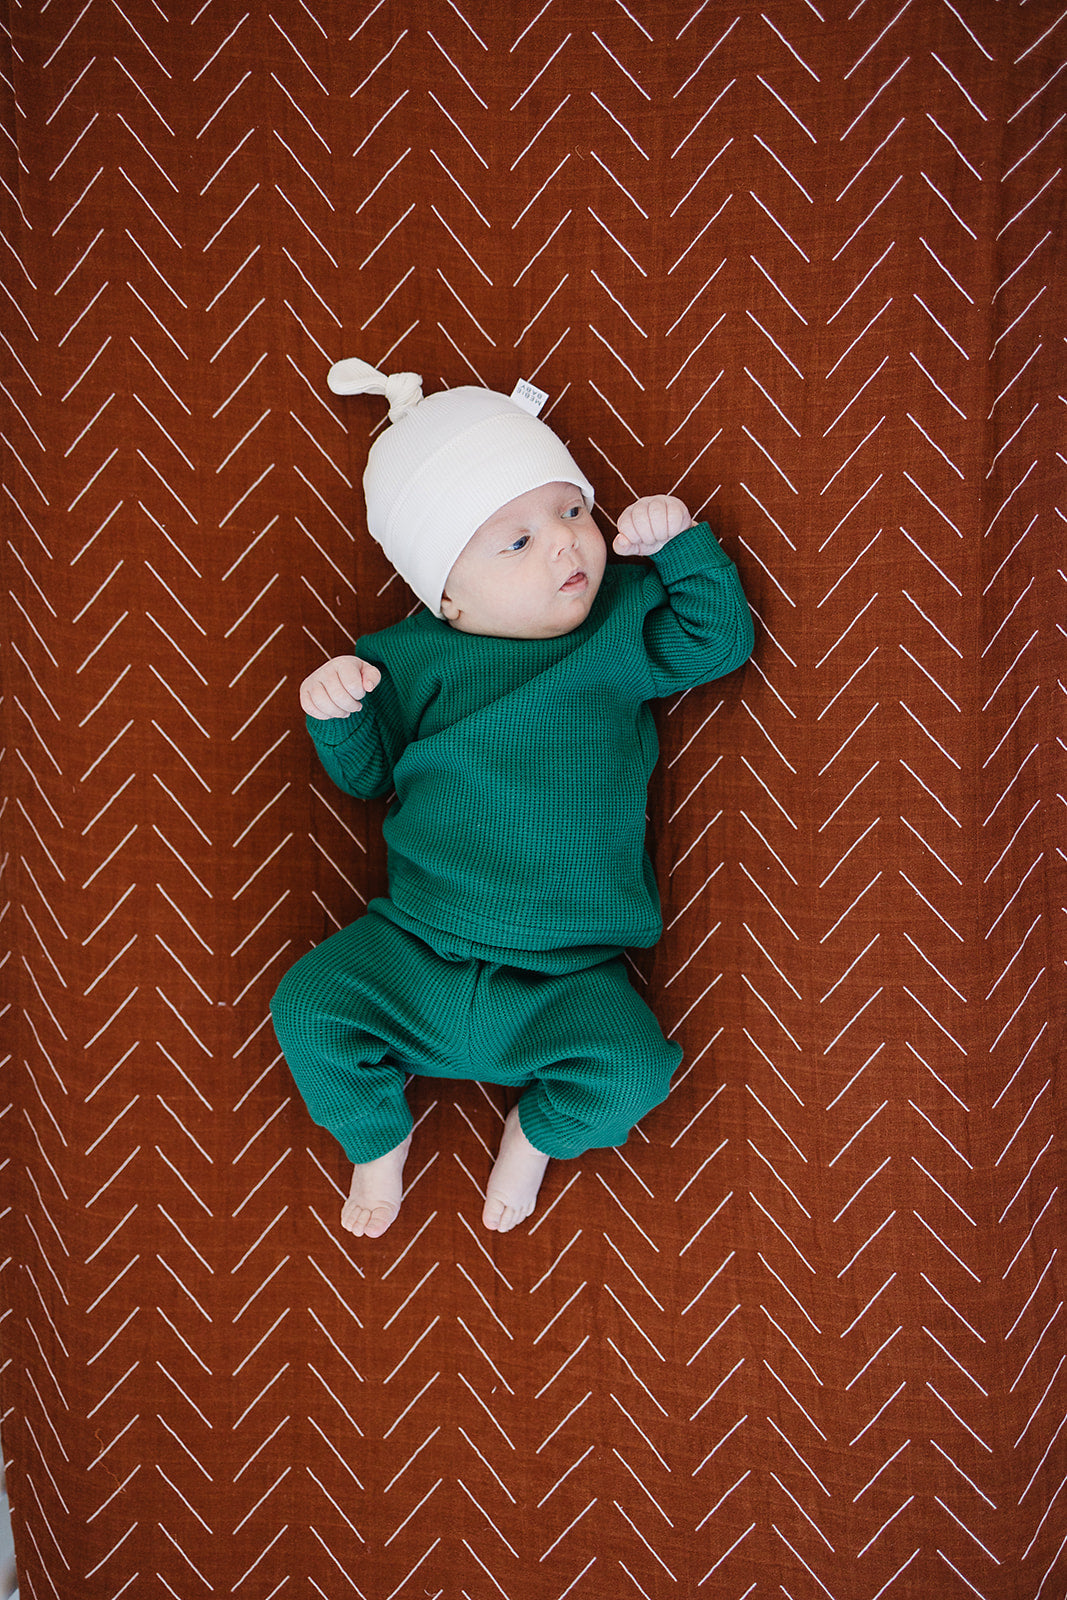 Mebie Baby Organic Ribbed Newborn Knot Hat - Vanilla